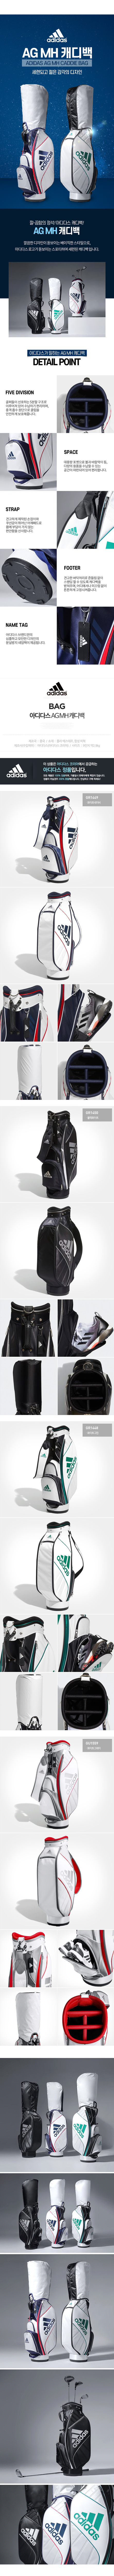 adidas_ag_mh_caddie_bag_21.jpg